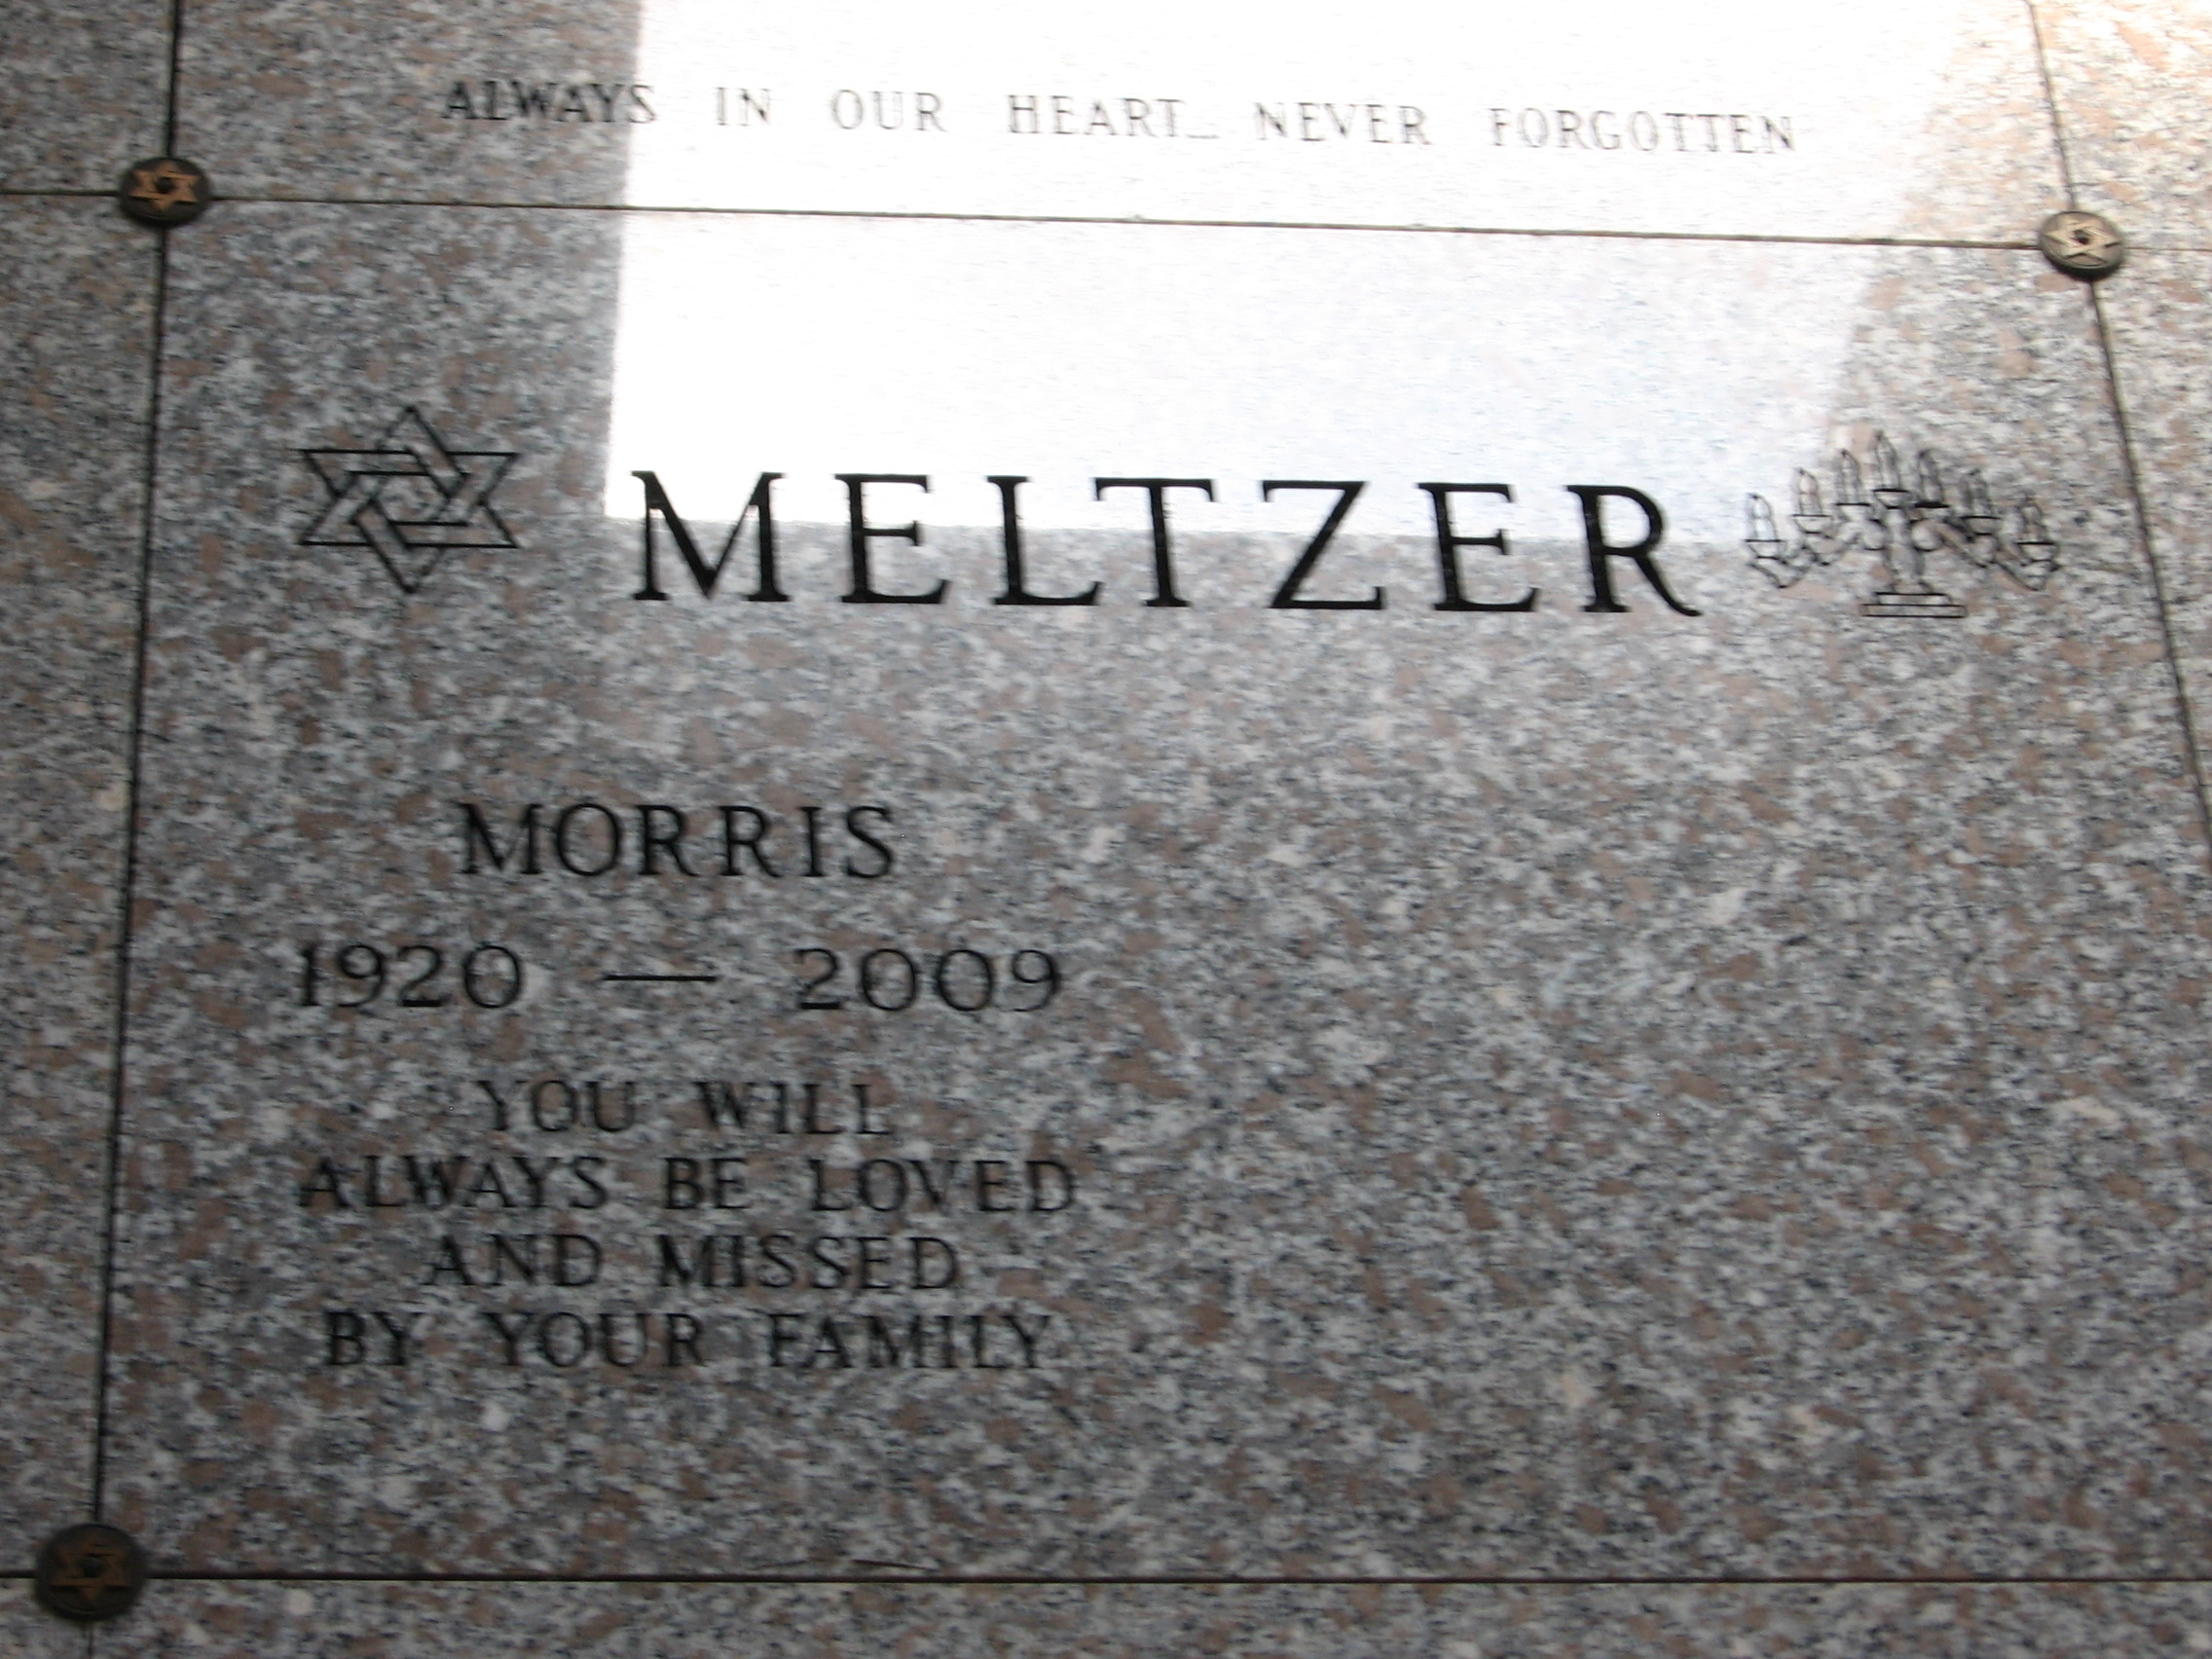 Morris Meltzer